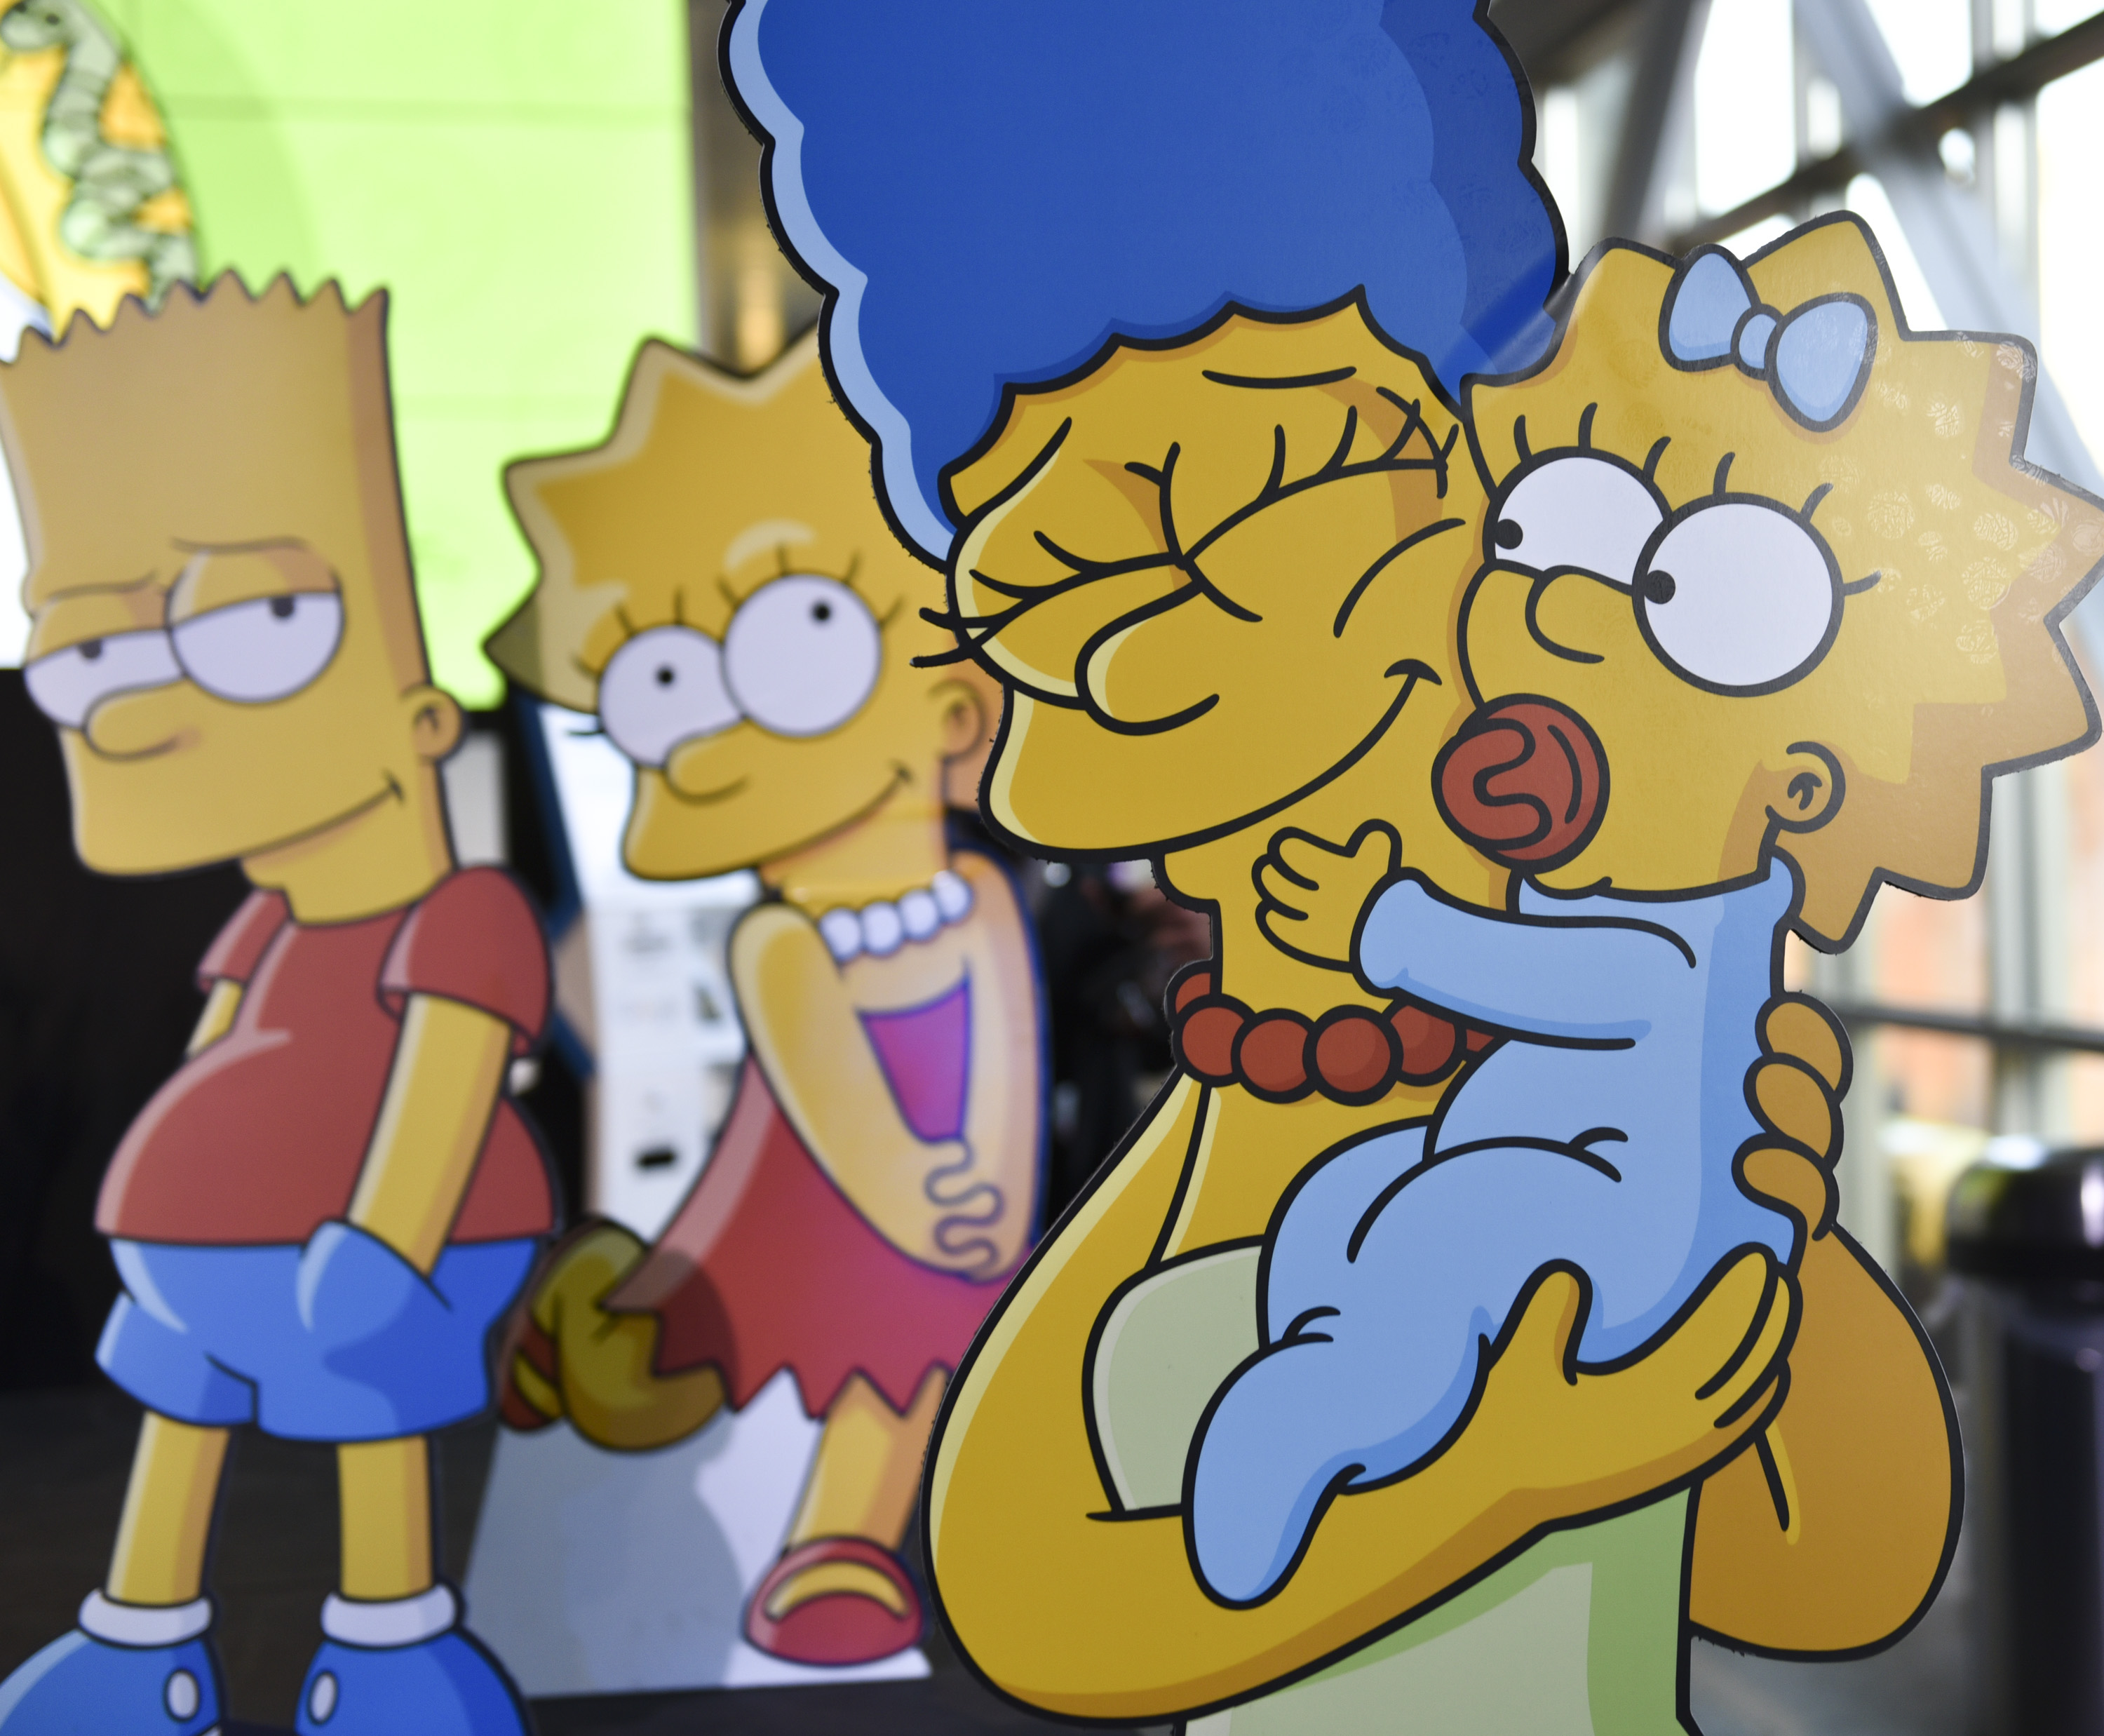 Qué será del futuro de Los Simpson?